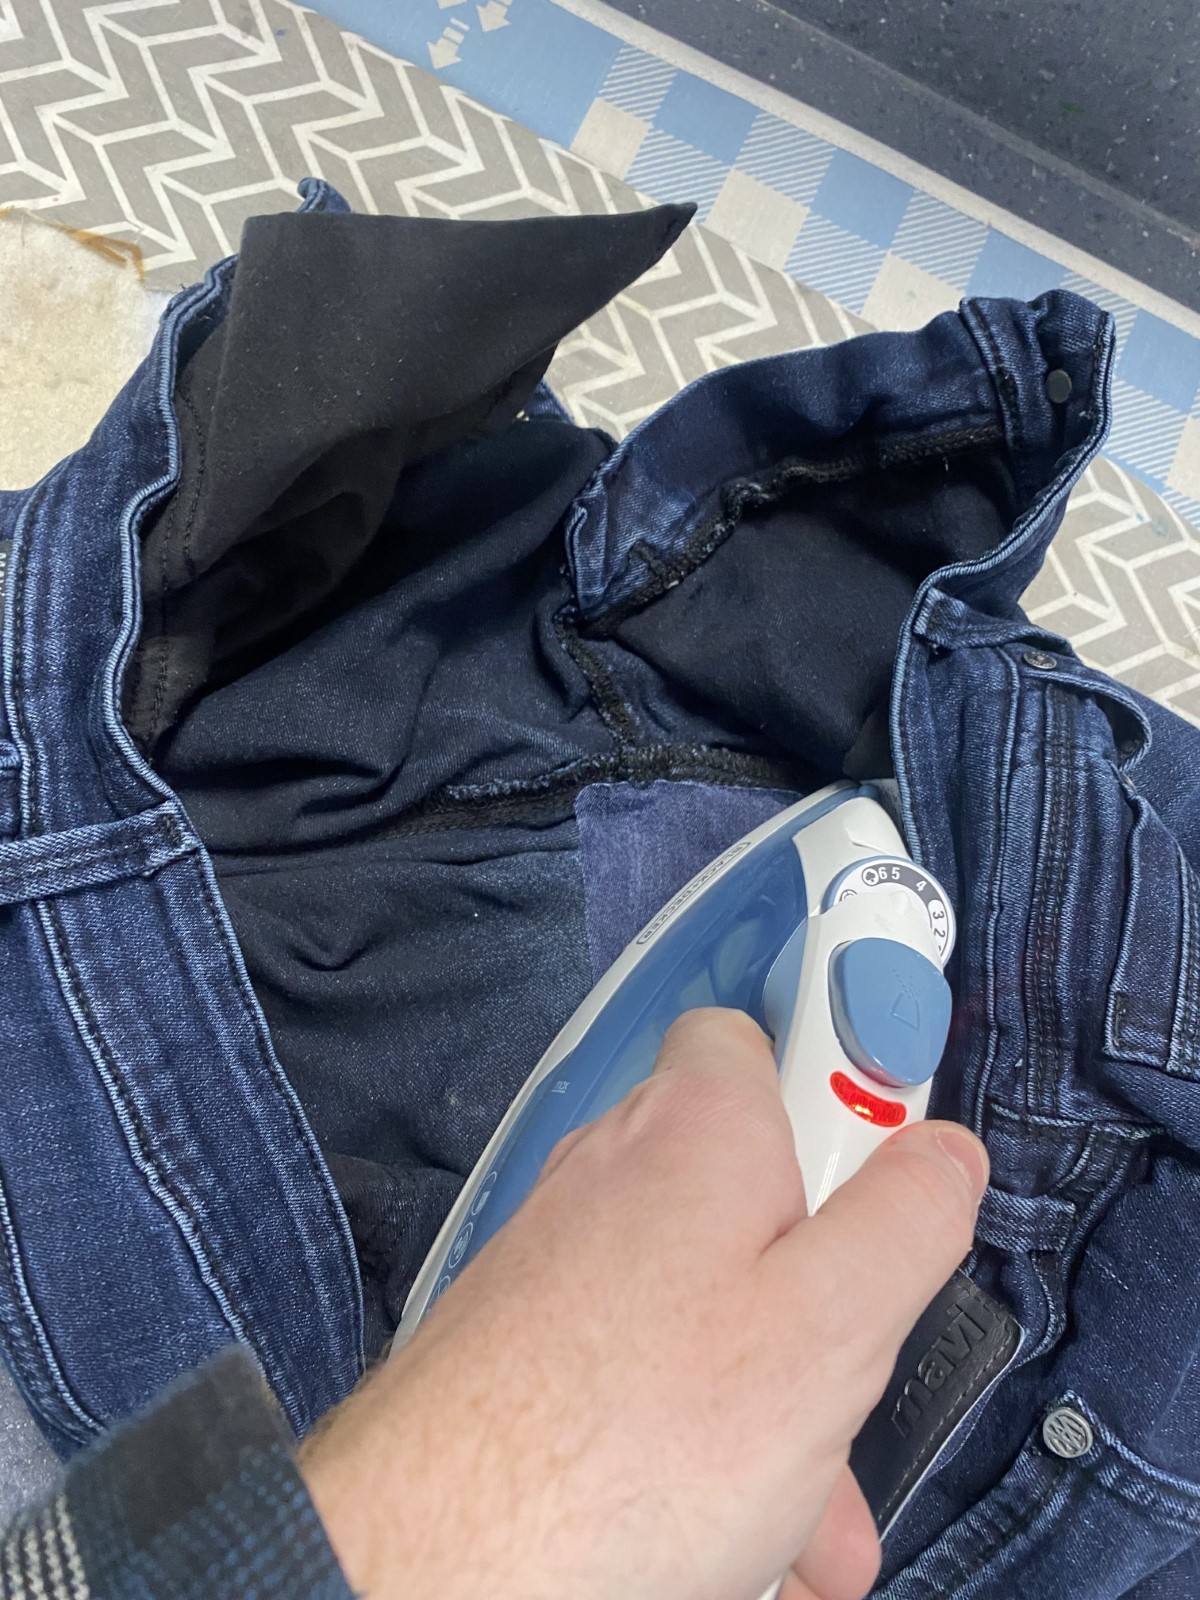 Hand holding an iron over a dark denim patch over dark denim jeans